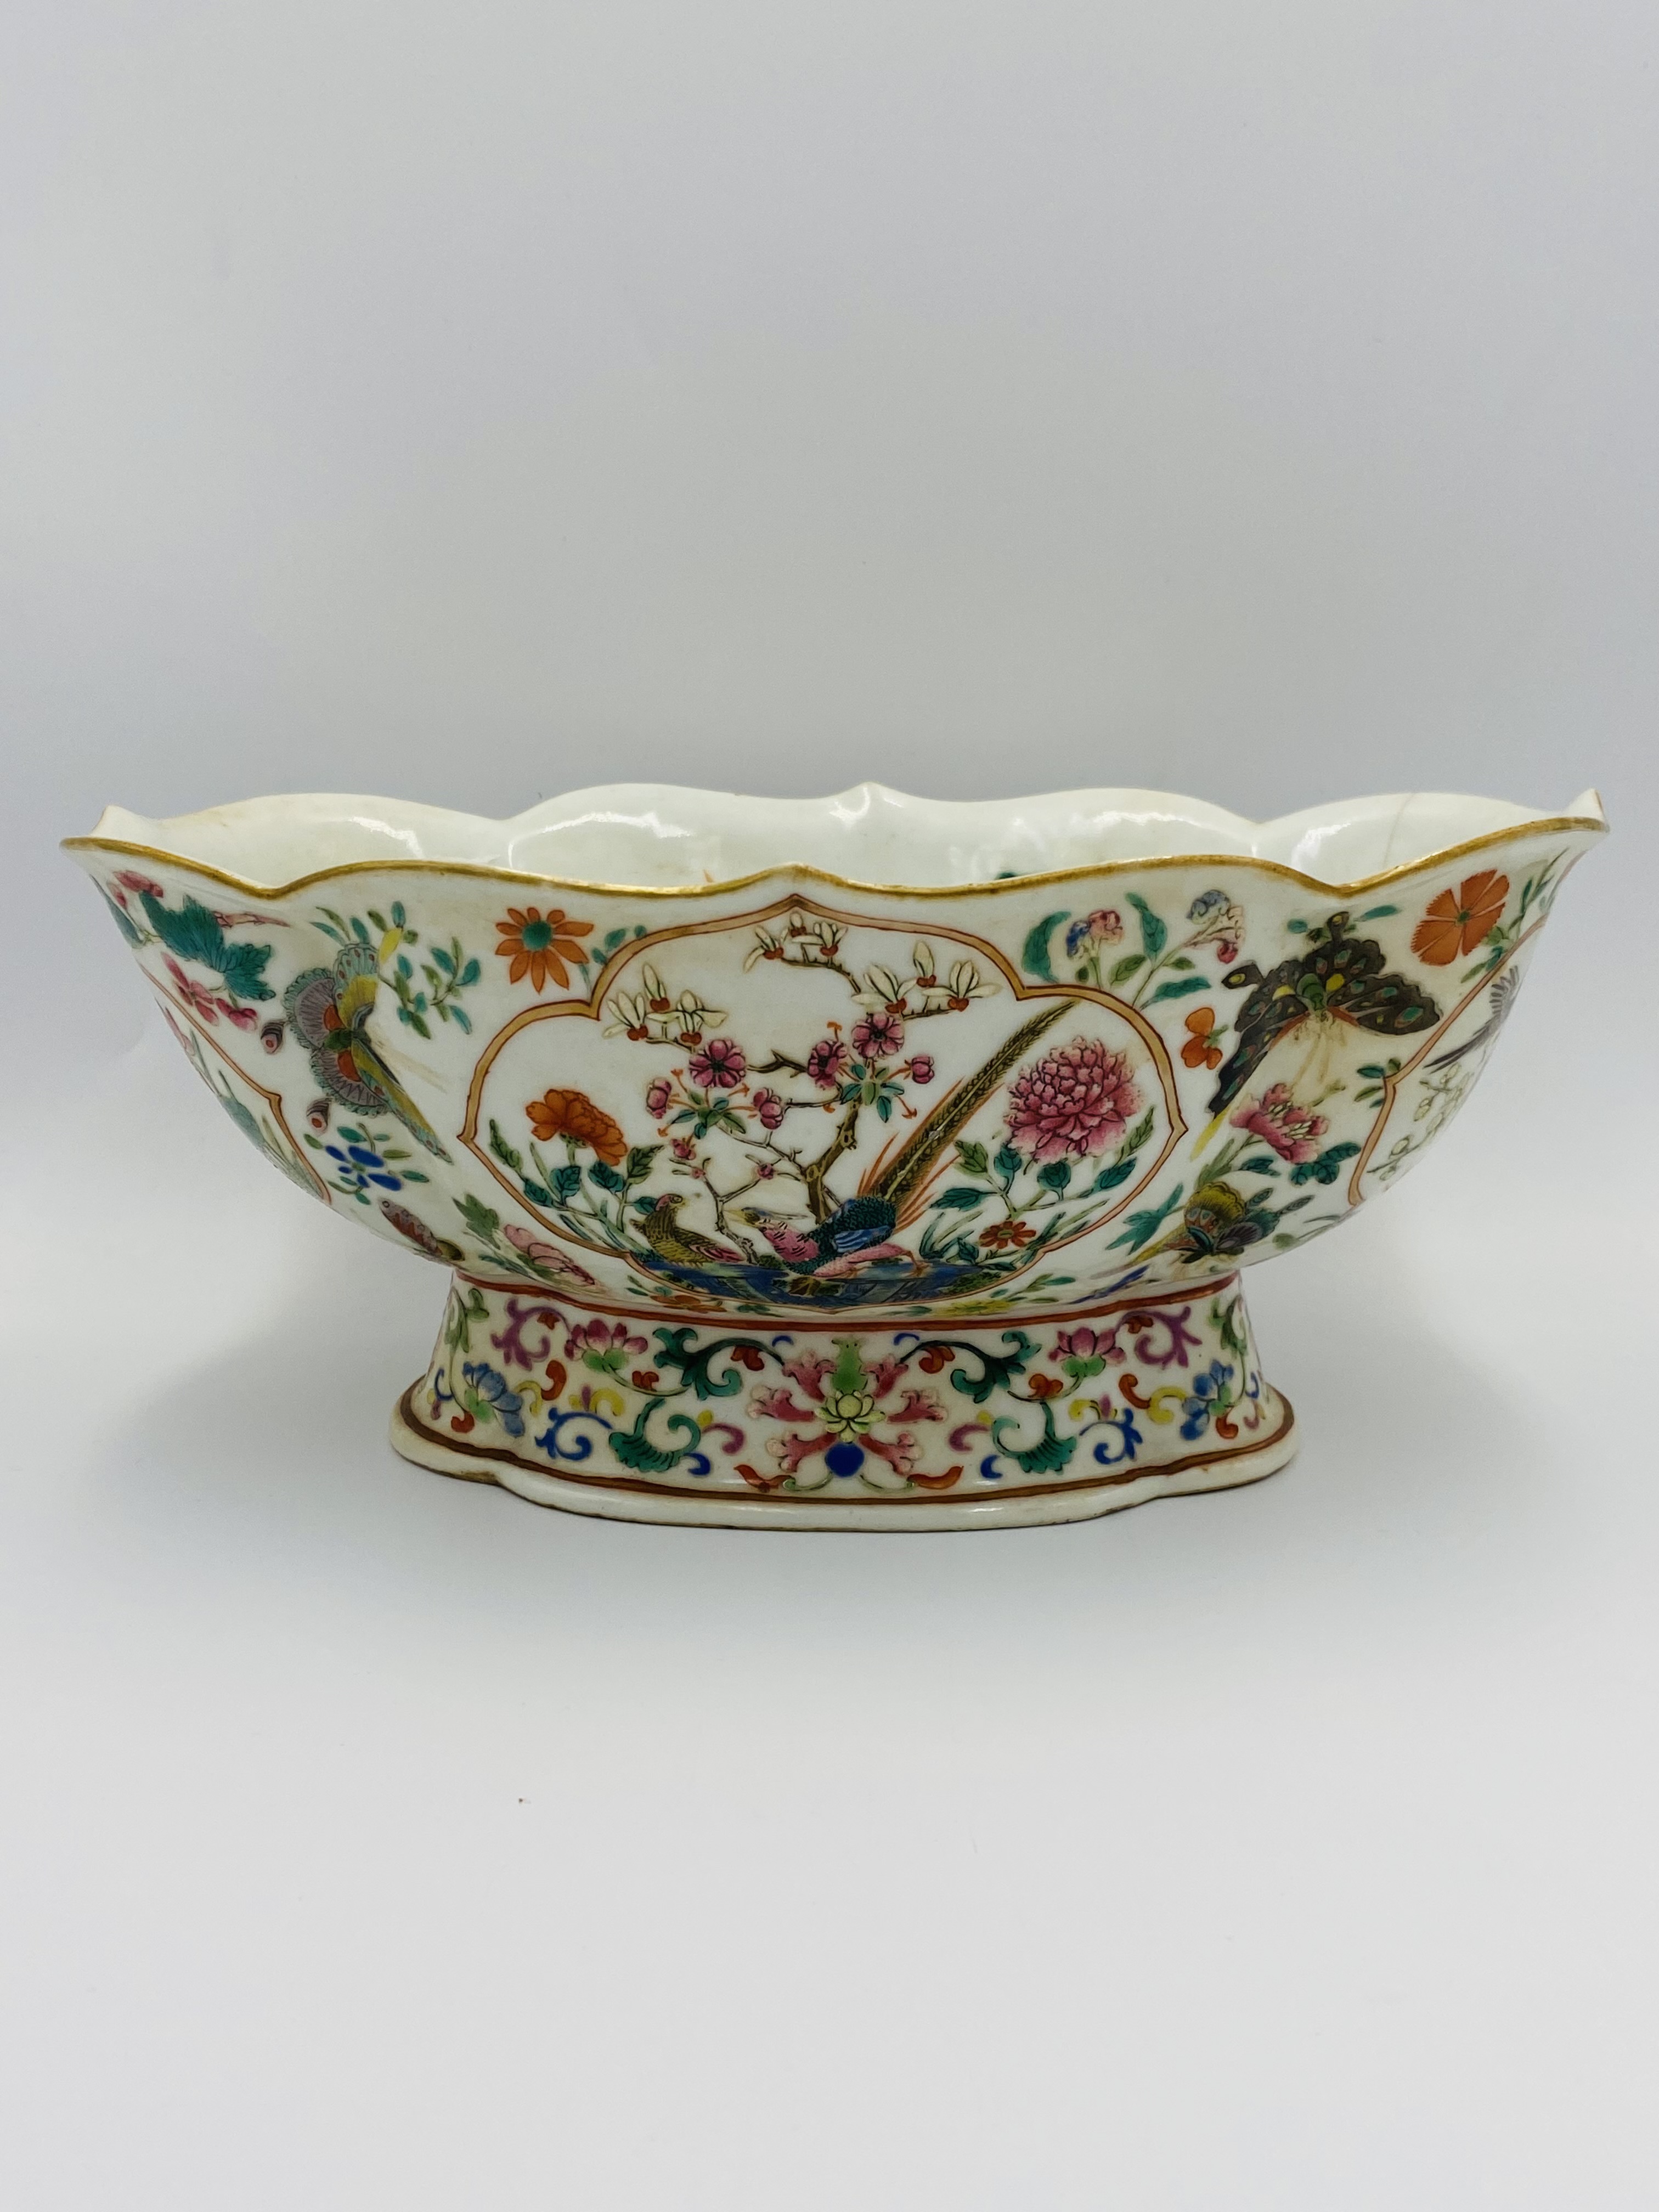 Chinese famille verte goldfish bowl - Image 7 of 7